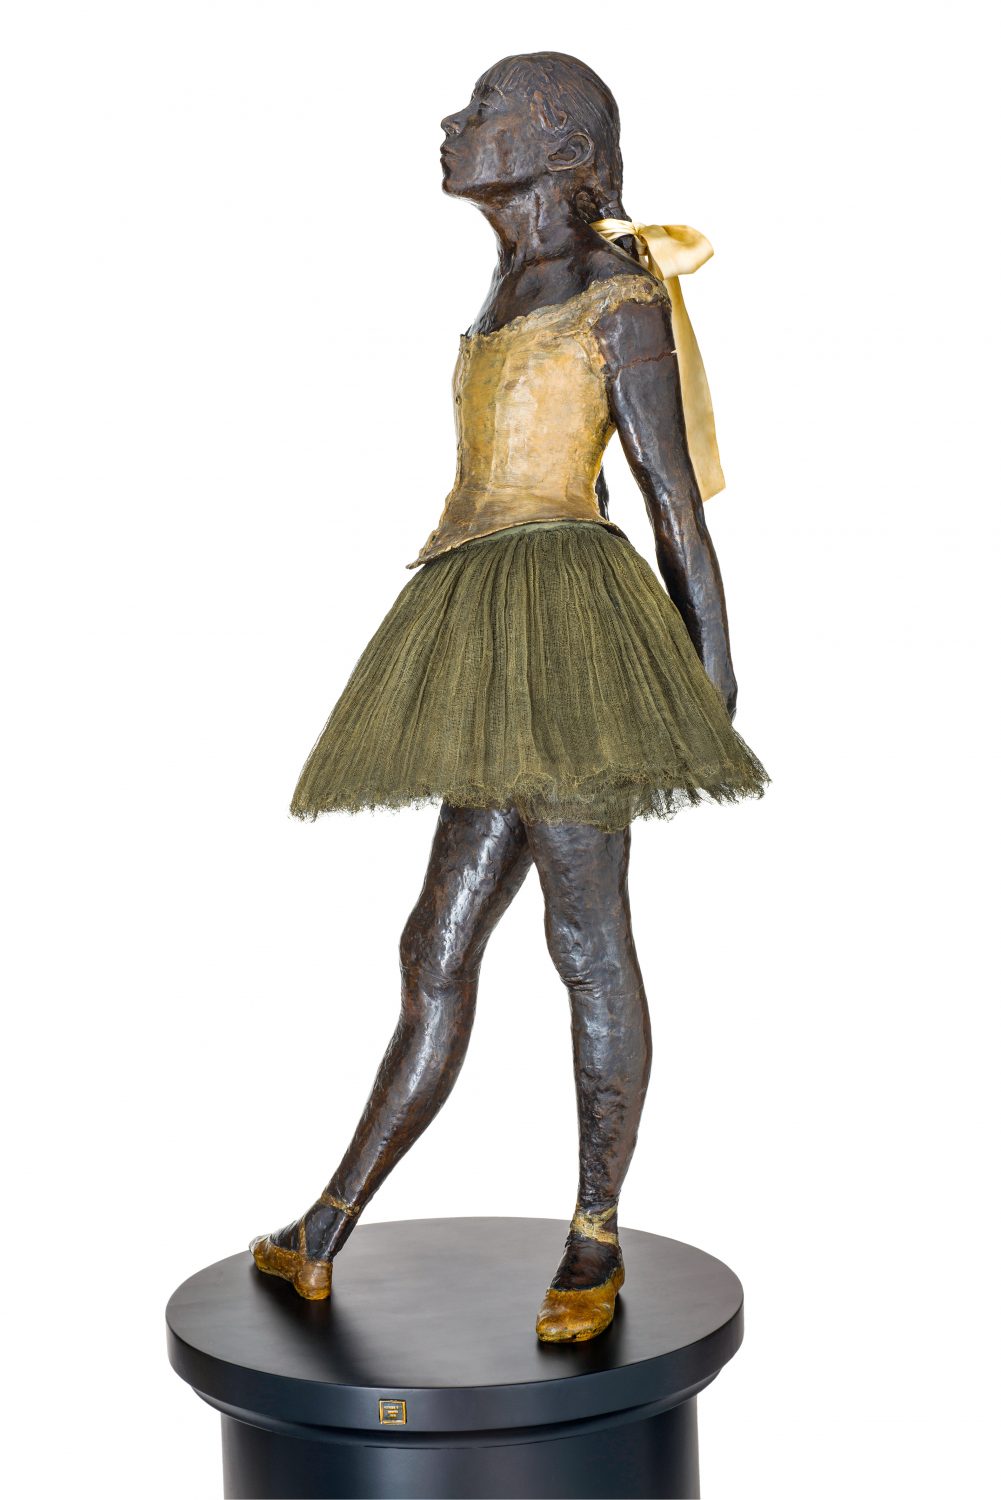 Edgar Degas Petite danseuse de quatorze ans e1584538423964